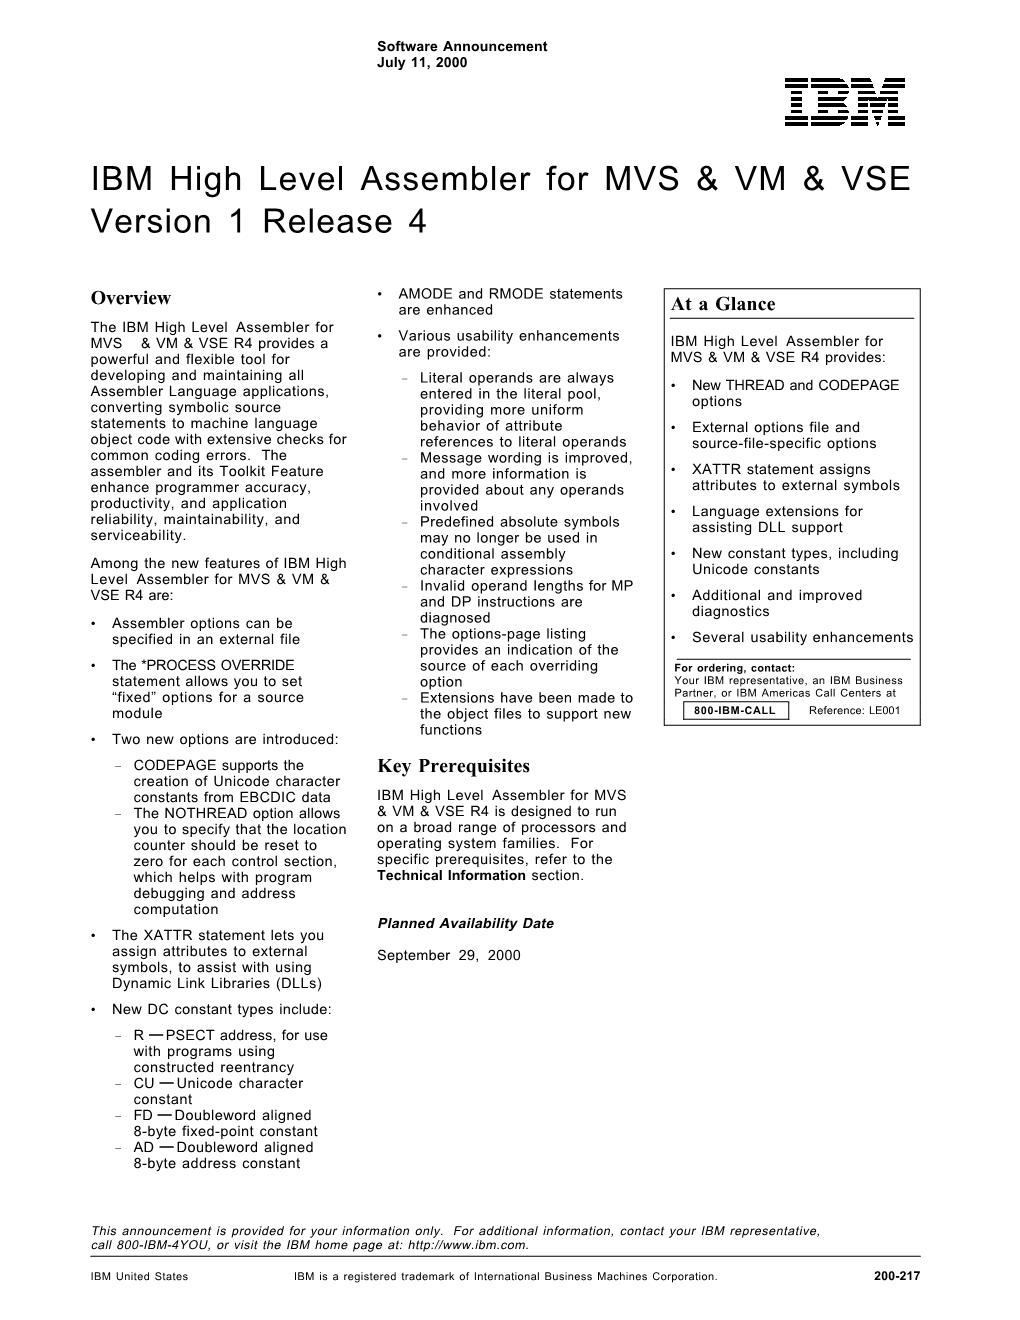 IBM High Level Assembler for MVS & VM & VSE Version 1 Release 4